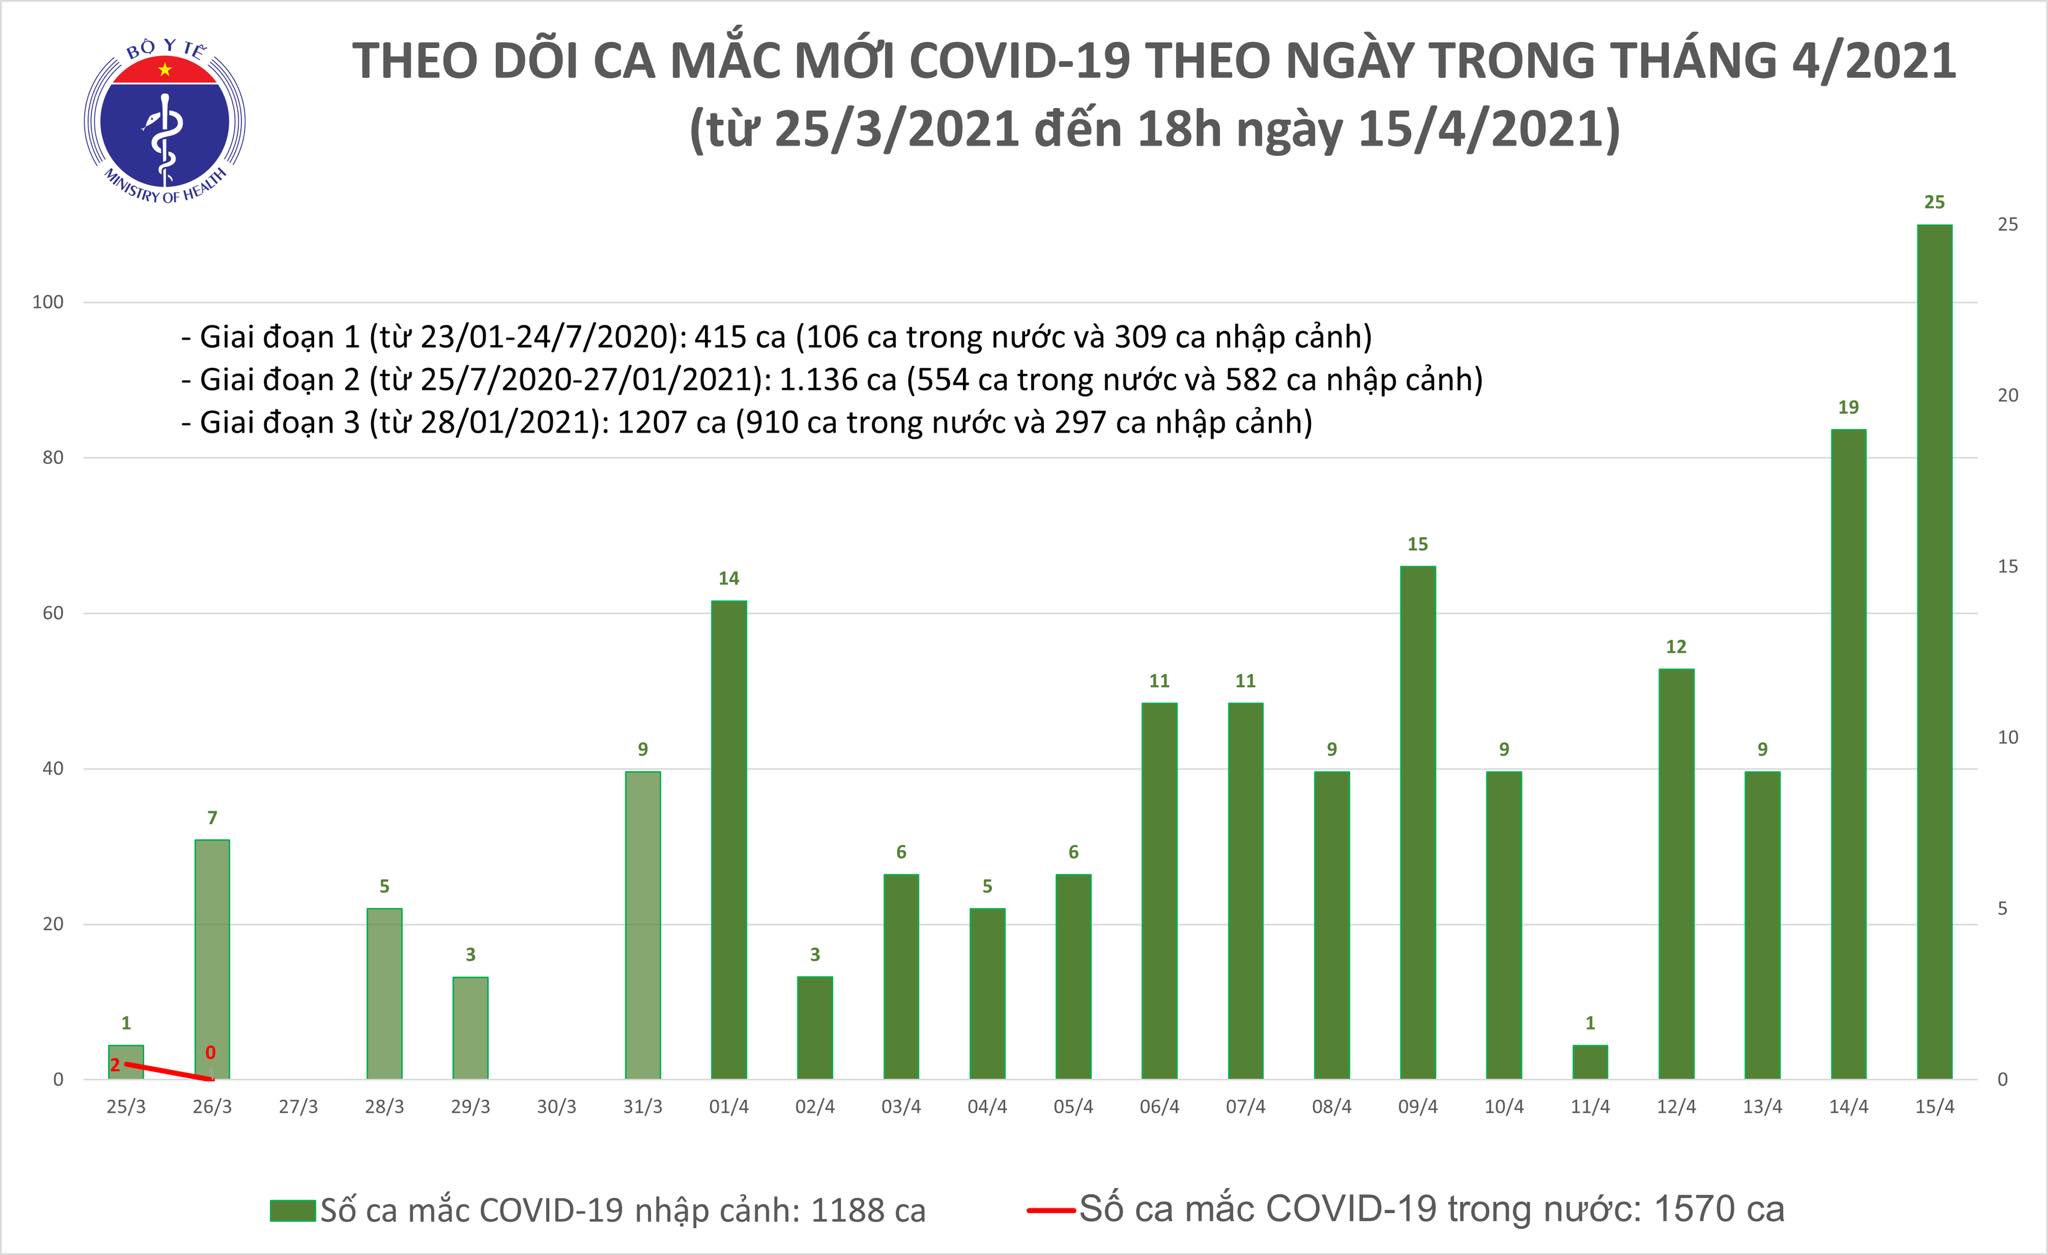 Chiều 15/4: Thêm 21 ca mắc COVID-19 tại TP Hồ Chí Minh và 5 địa phương khác